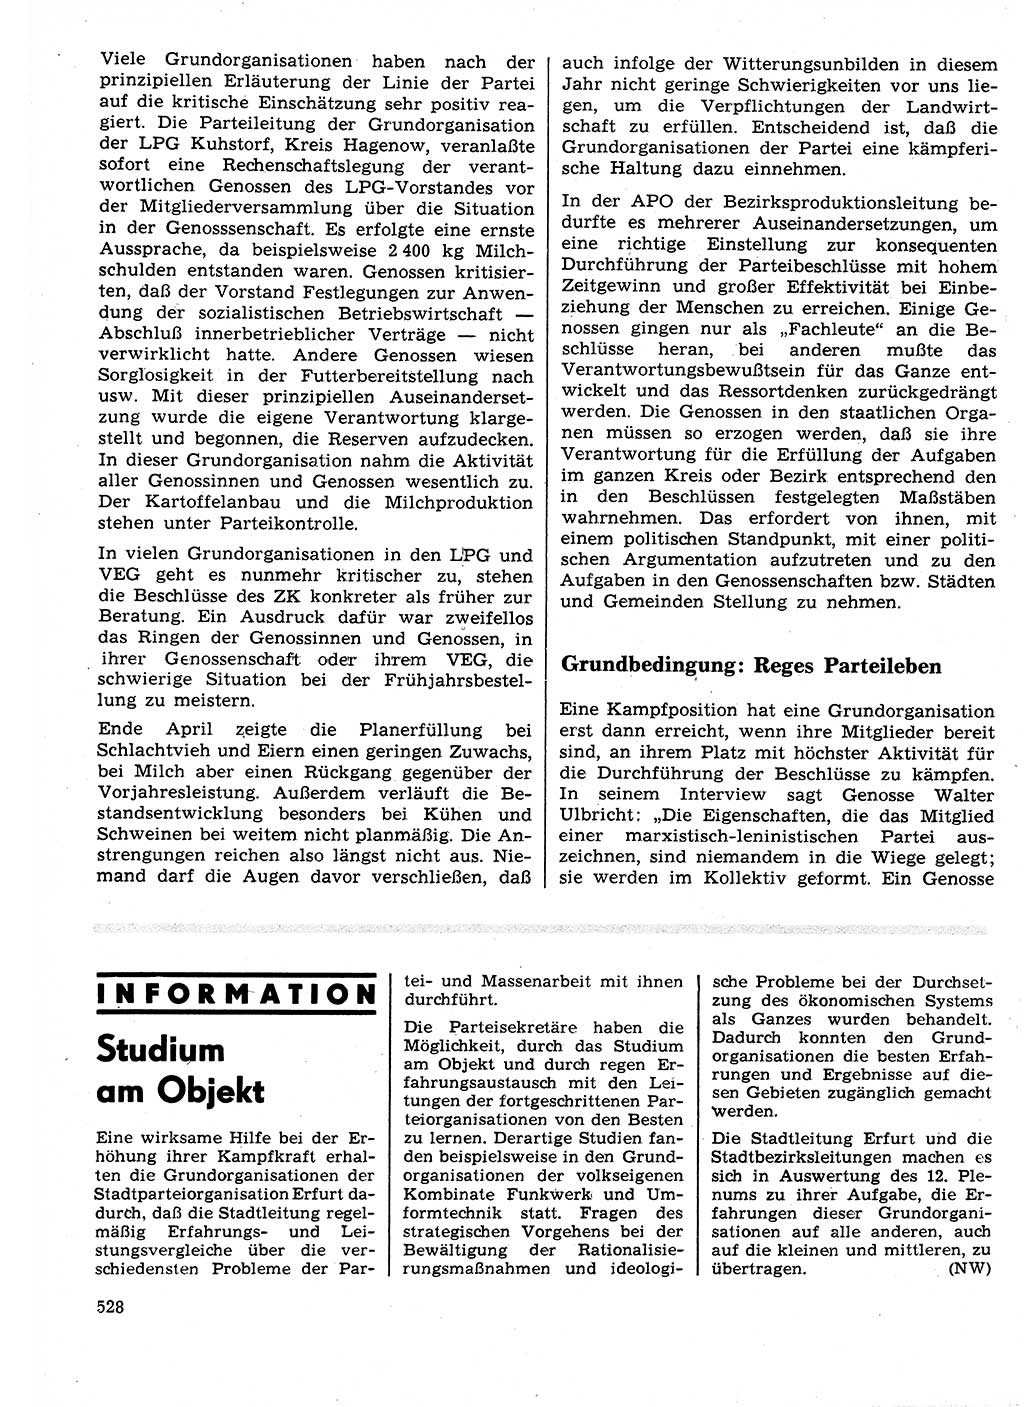 Neuer Weg (NW), Organ des Zentralkomitees (ZK) der SED (Sozialistische Einheitspartei Deutschlands) für Fragen des Parteilebens, 25. Jahrgang [Deutsche Demokratische Republik (DDR)] 1970, Seite 528 (NW ZK SED DDR 1970, S. 528)